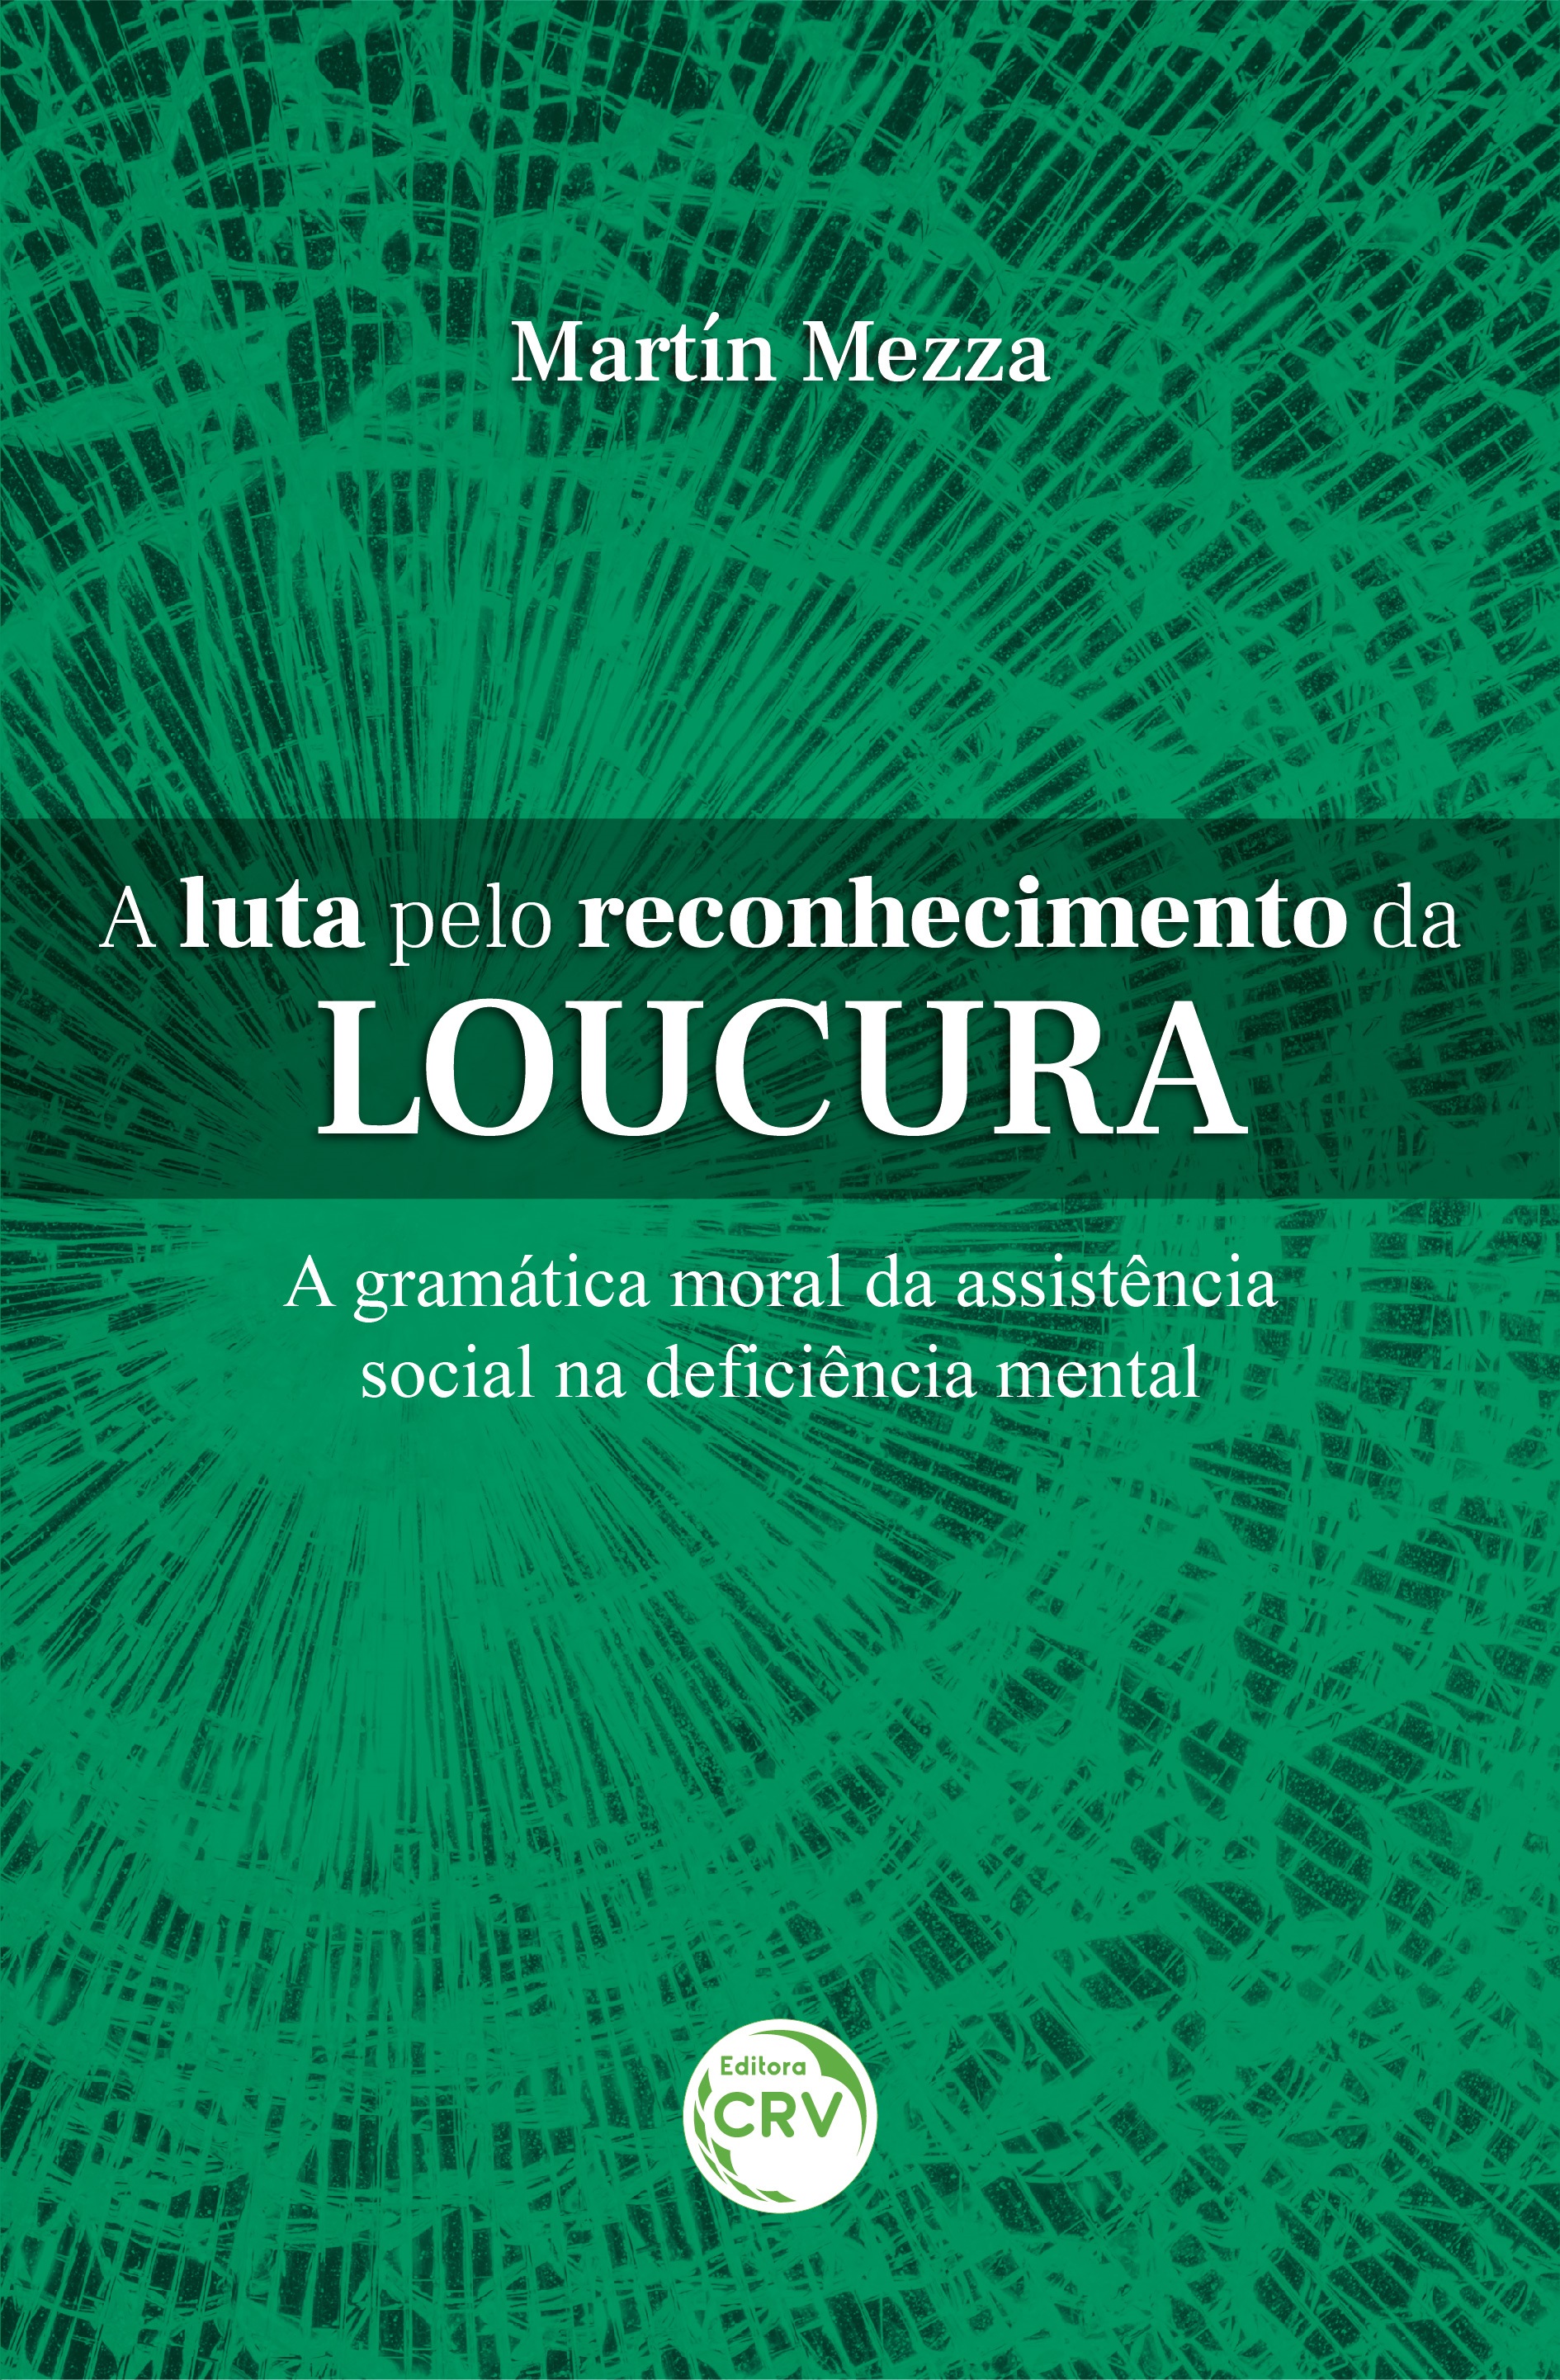 Capa do livro: A LUTA PELO RECONHECIMENTO DA LOUCURA <br>A gramática moral da assistência social na deficiência mental